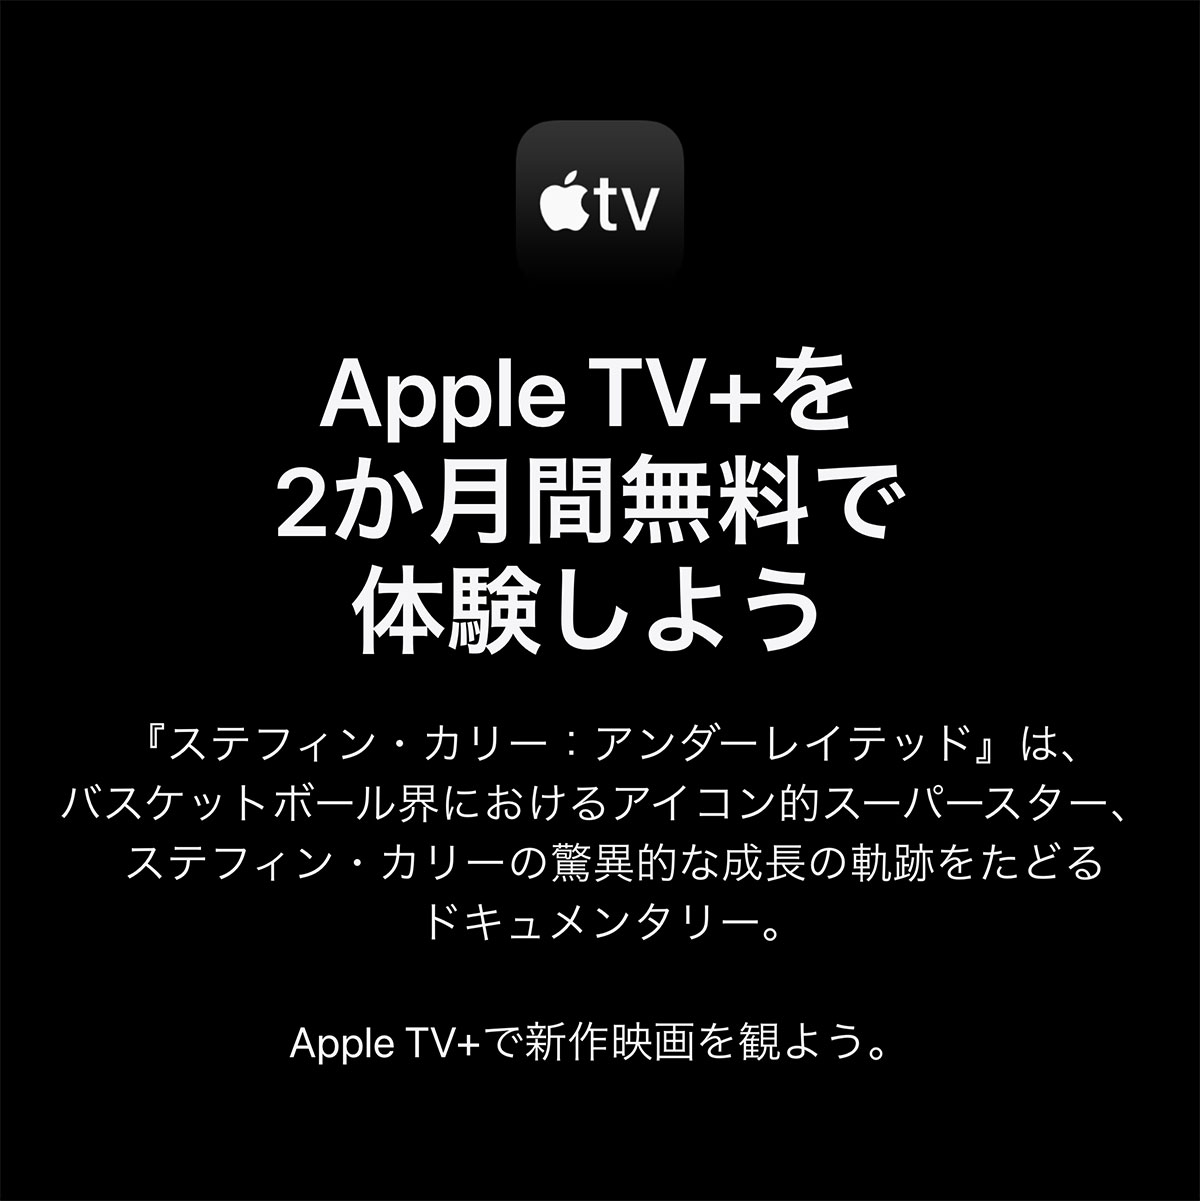 Apple TV+を2か月間無料で体験しよう 